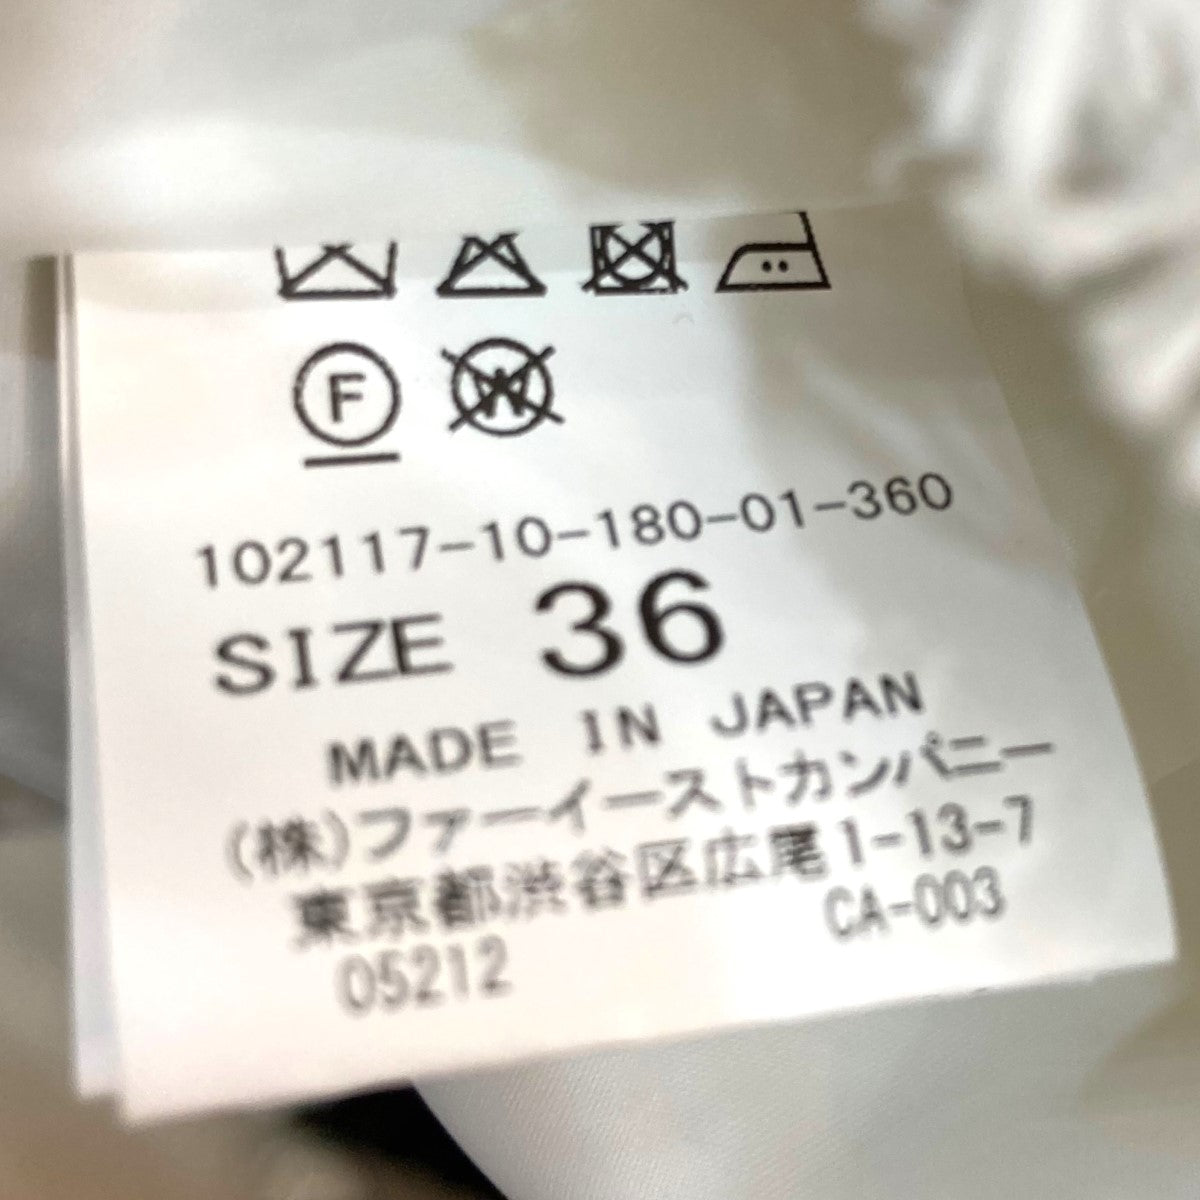 ANAYI(アナイ) ツイードジャケット 102117-10-180-01-360 ホワイト ...